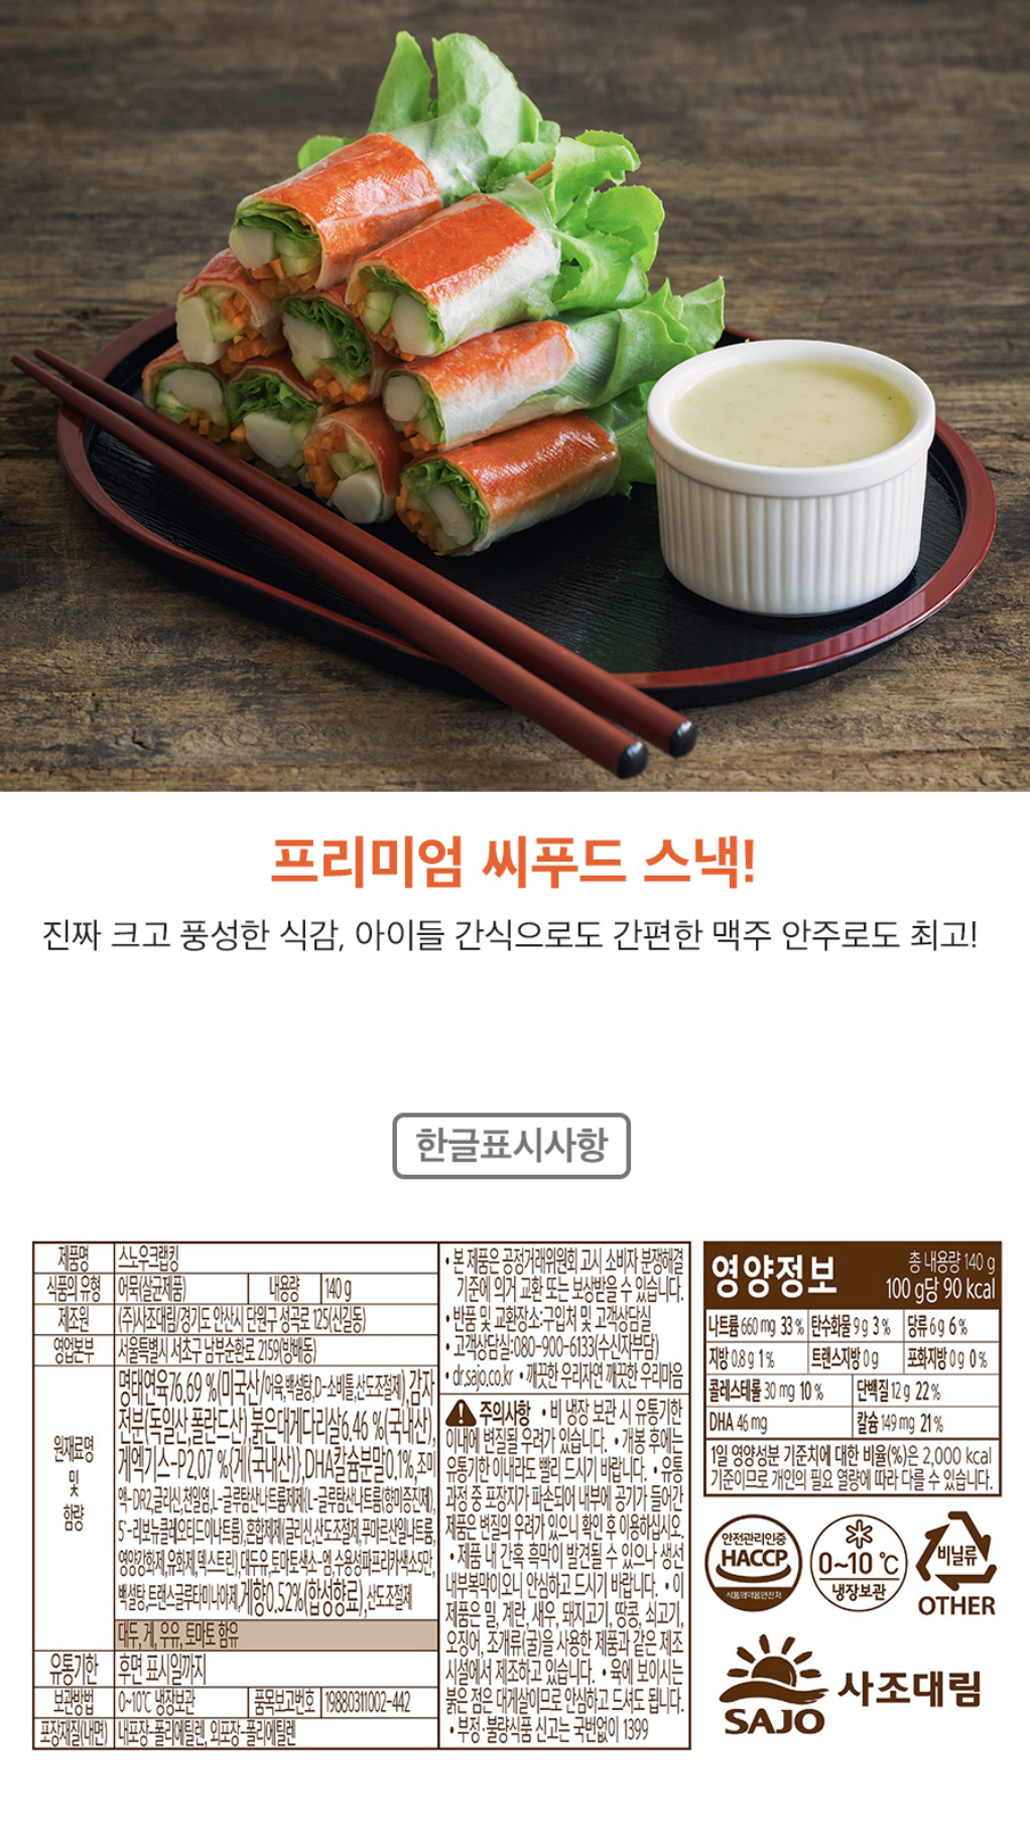 韓國食品-[Sajodaerim] Snow Crab King 140g